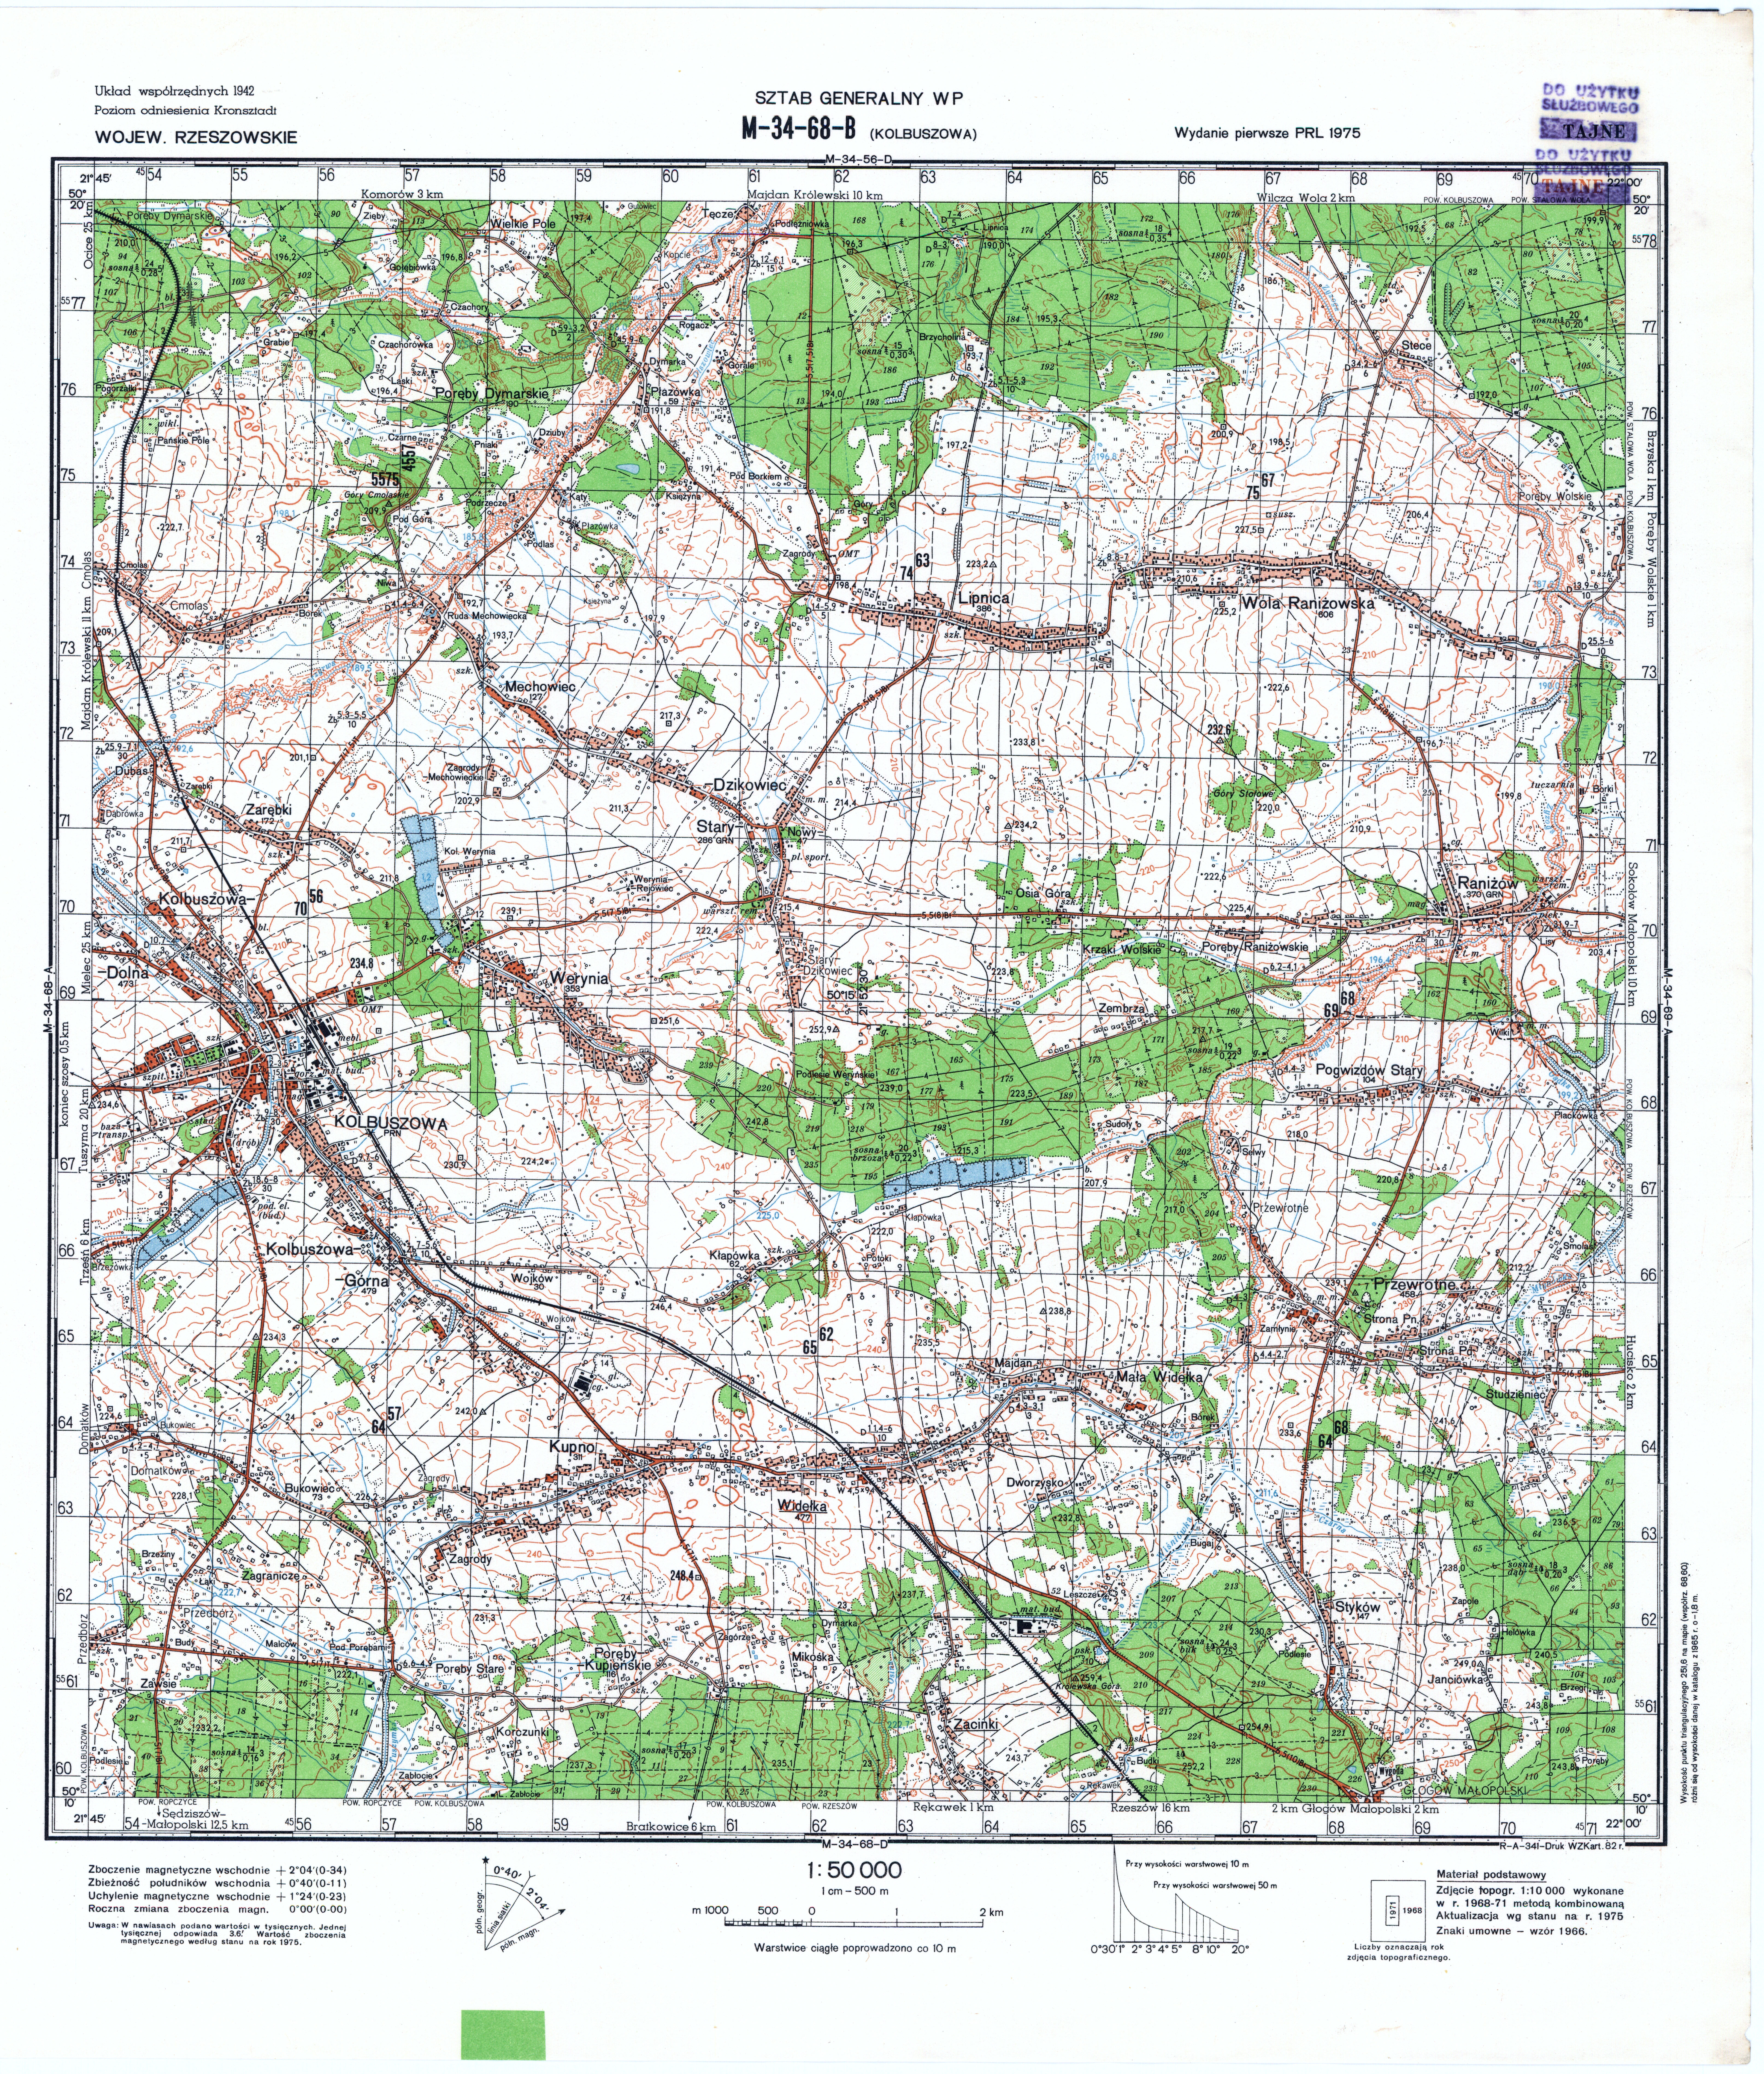 Mapy topograficzne LWP 1_50 000 - M-34-68-B_KOLBUSZOWA_1982.jpg